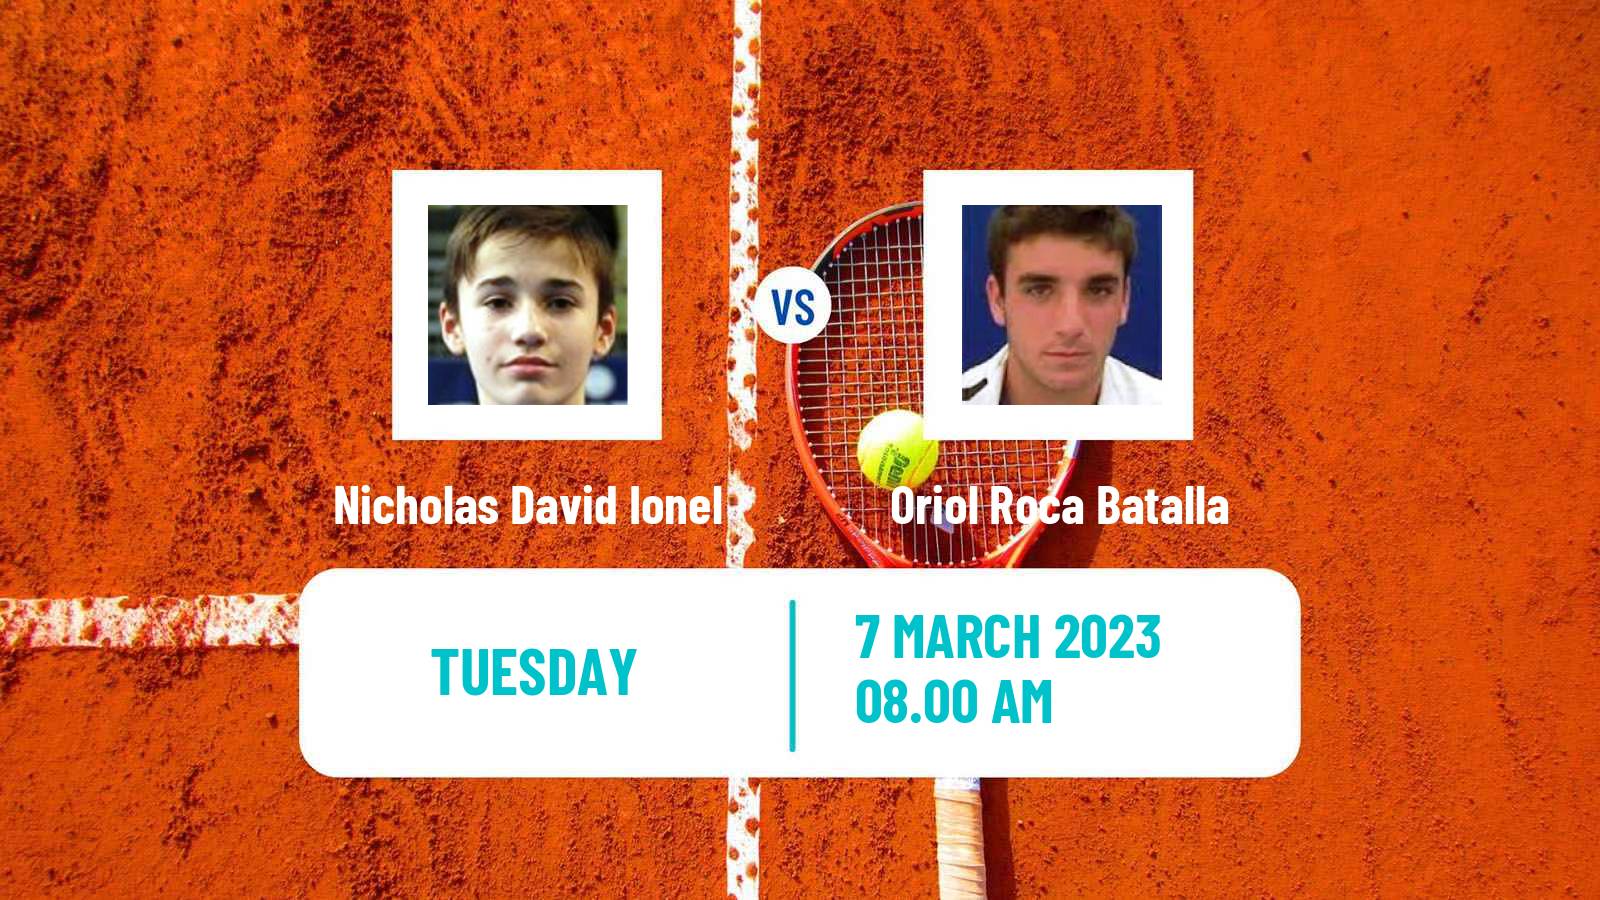 Tennis ATP Challenger Nicholas David Ionel - Oriol Roca Batalla